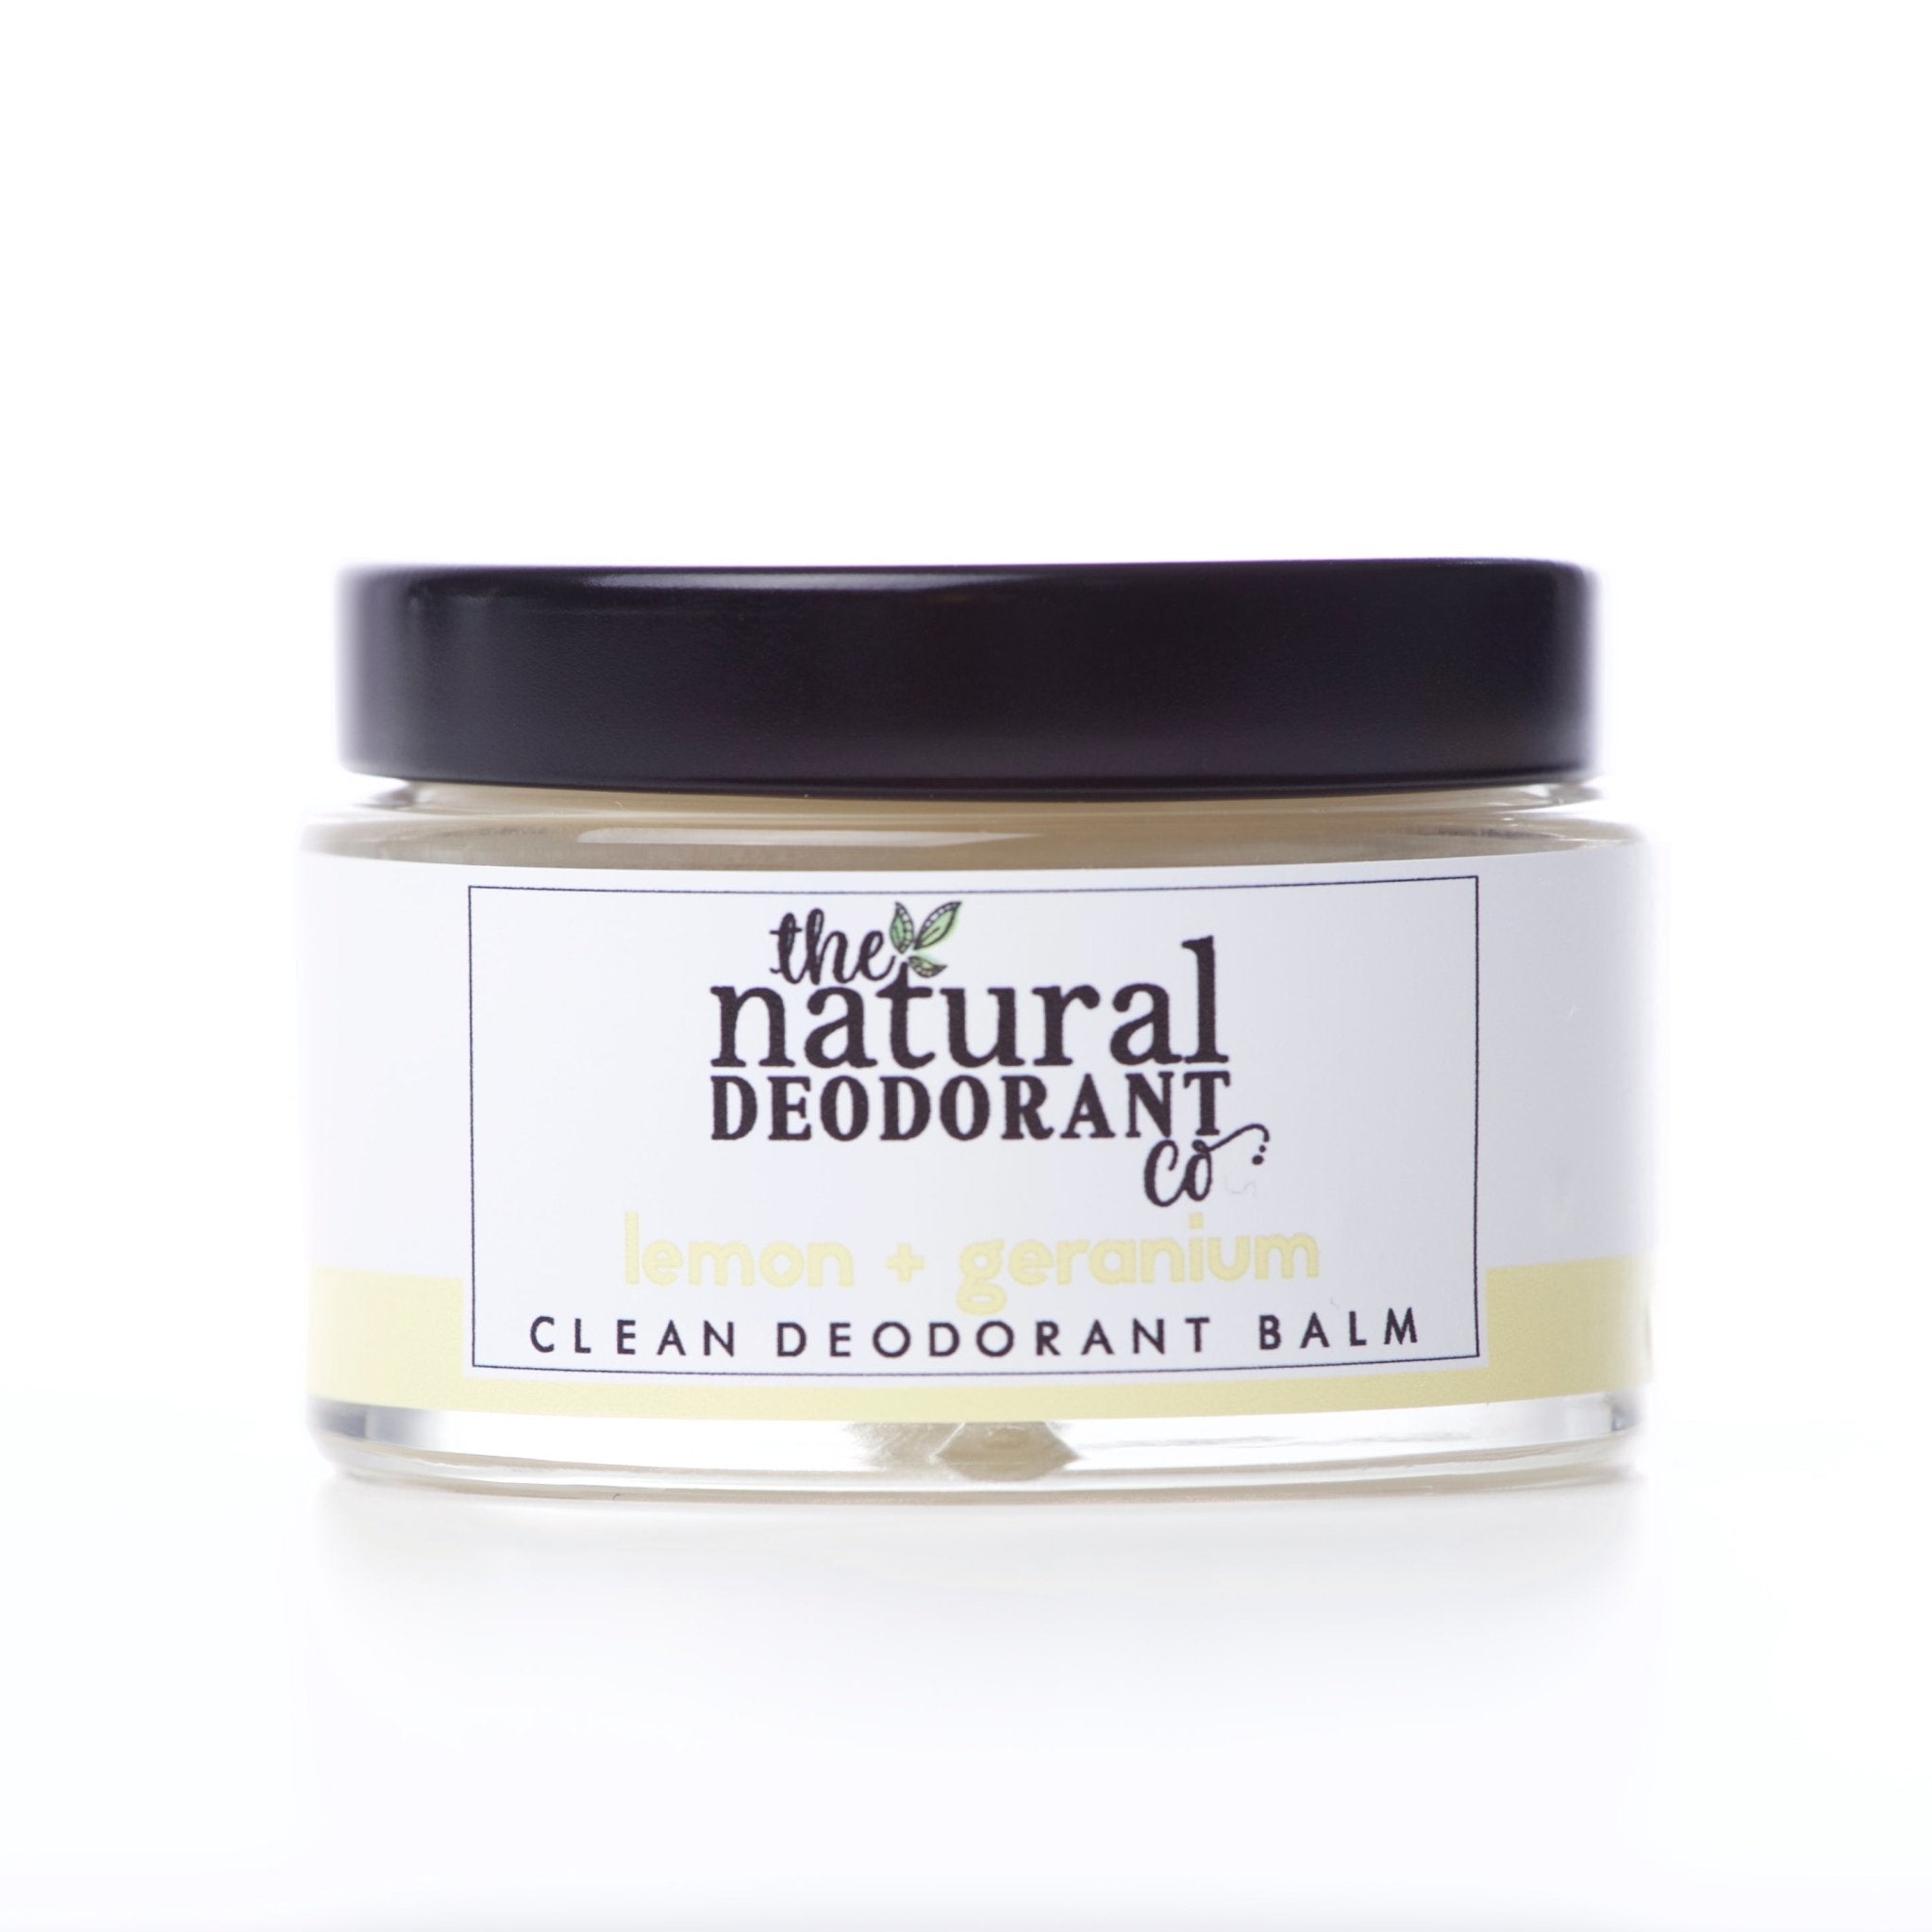 Clean Deodorant Balm | Lemon + Geranium